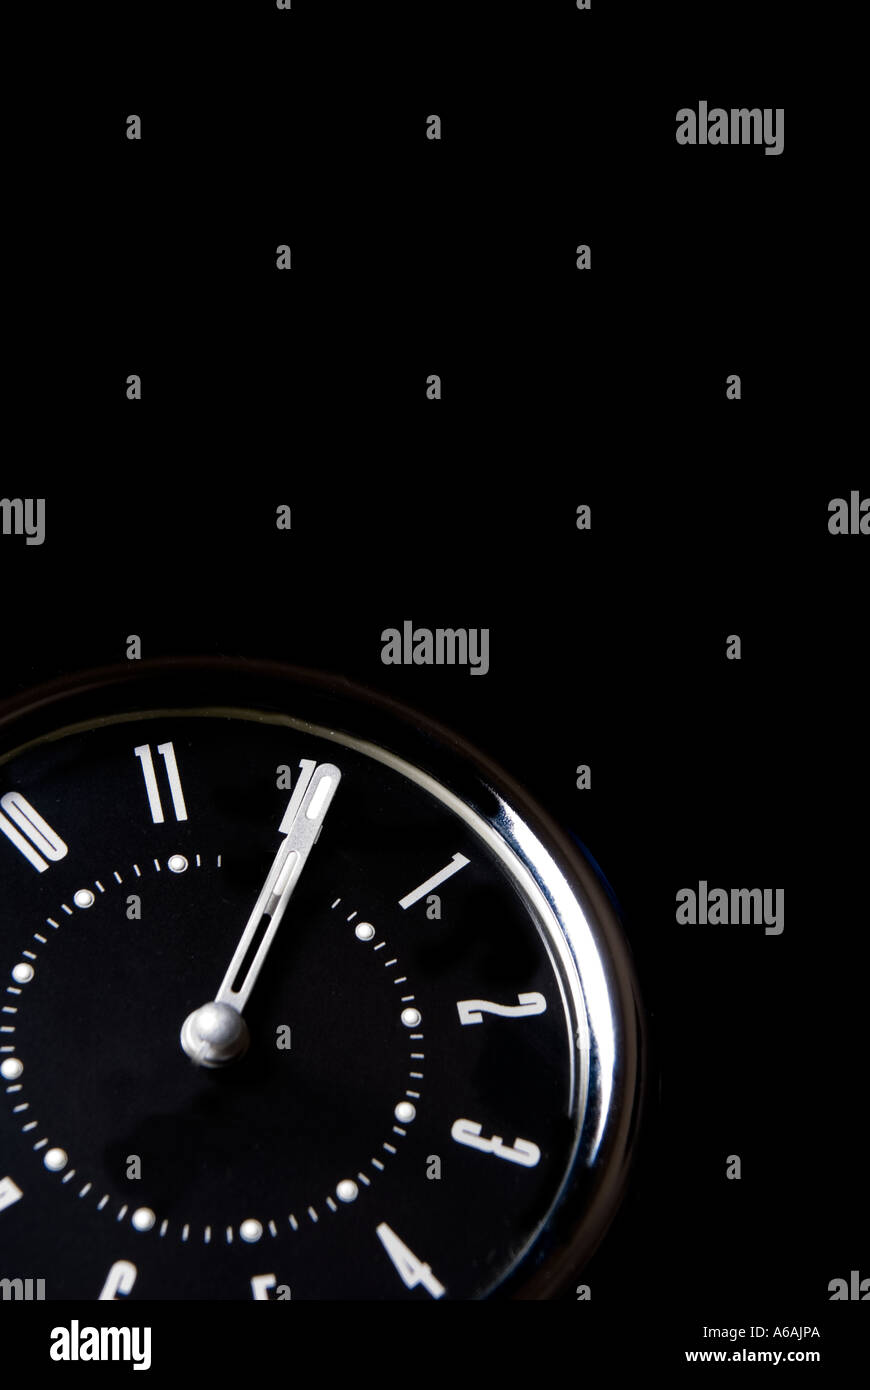 Alarm clock set at twelve o clock Stock Photo - Alamy